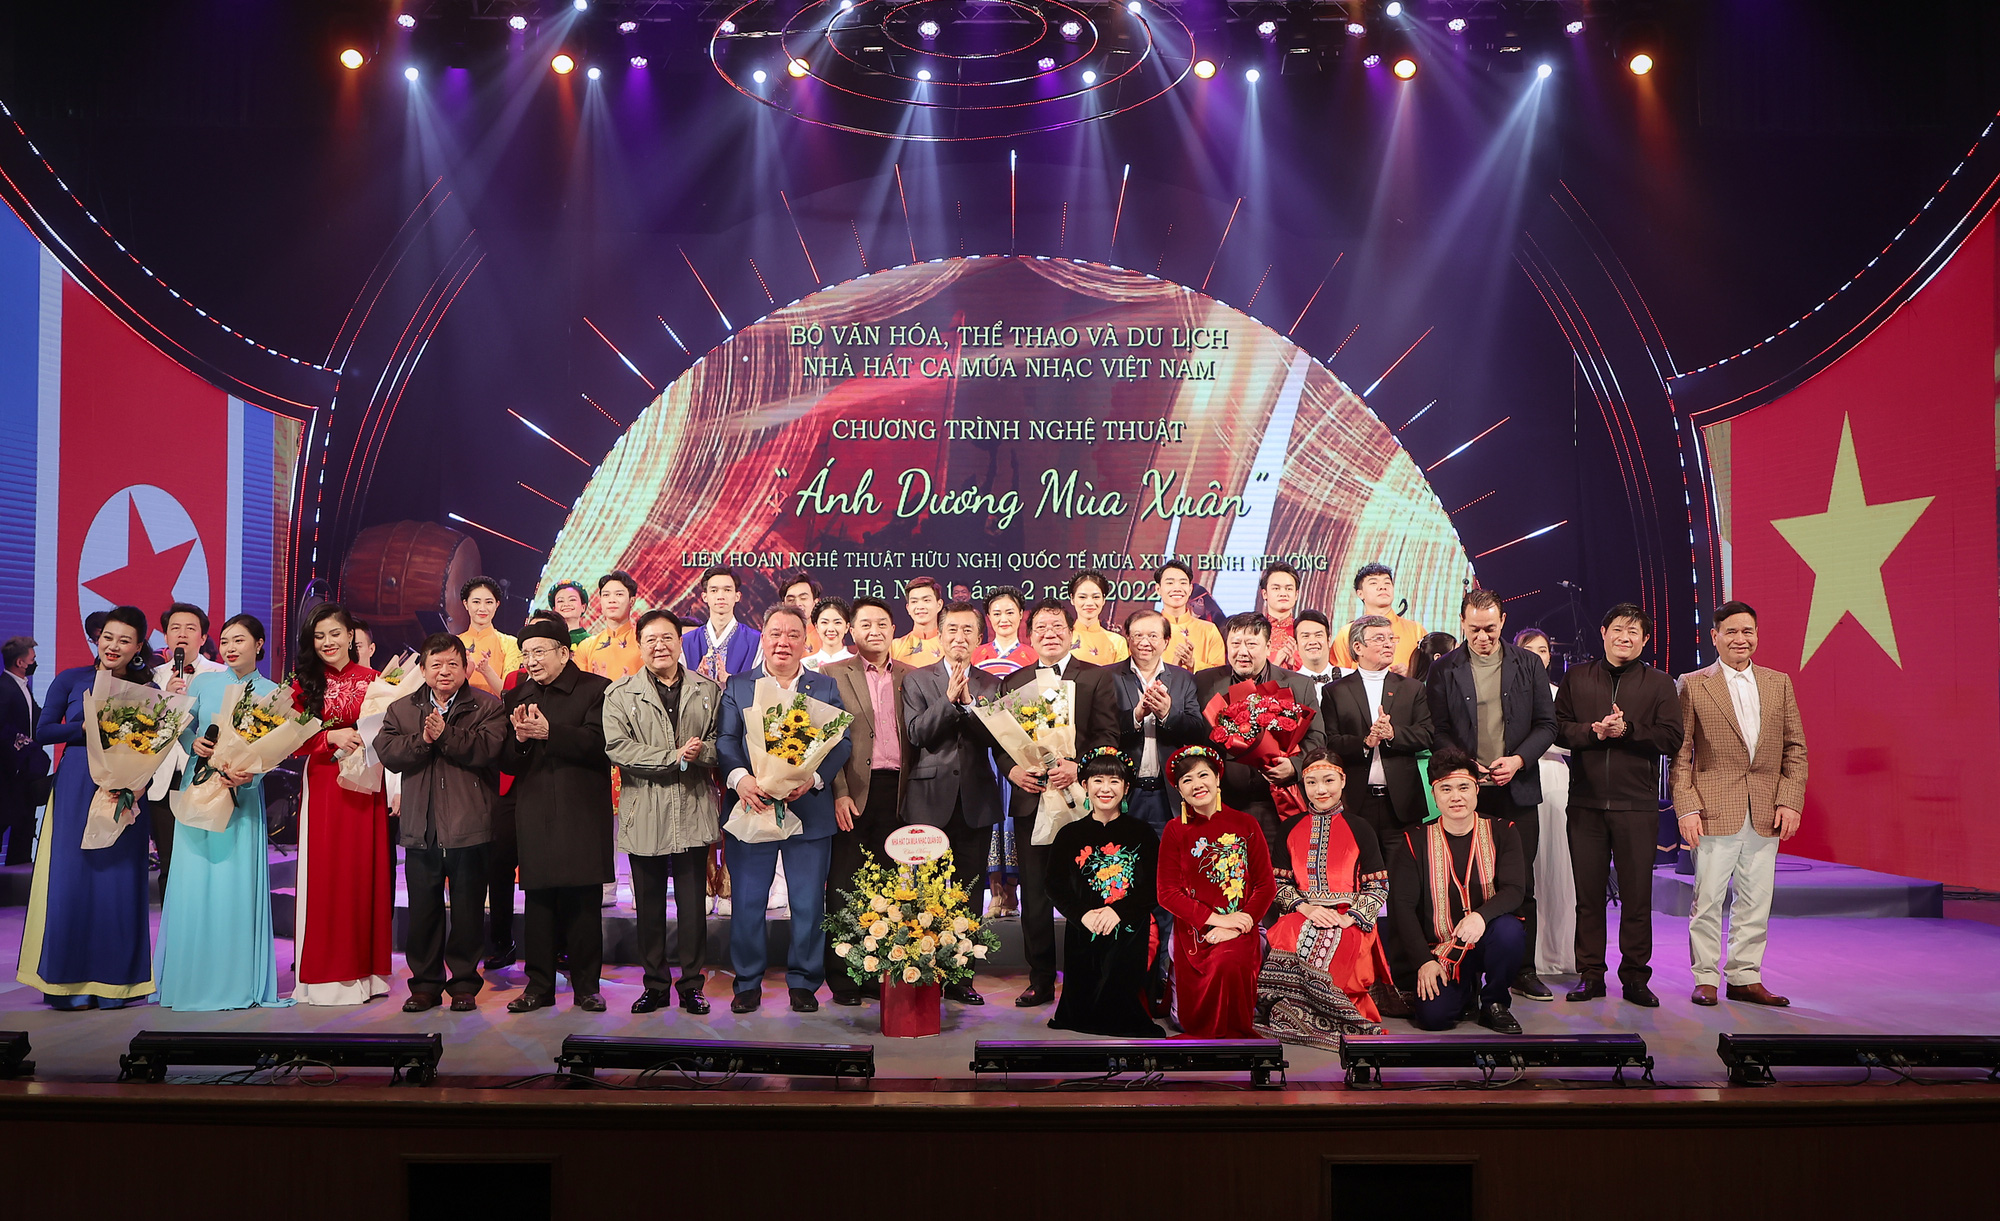 Chương trình nghệ thuật "Ánh Dương Mùa Xuân”: Ca ngợi tình hữu nghị đặc biệt giữa Việt Nam - Triều Tiên